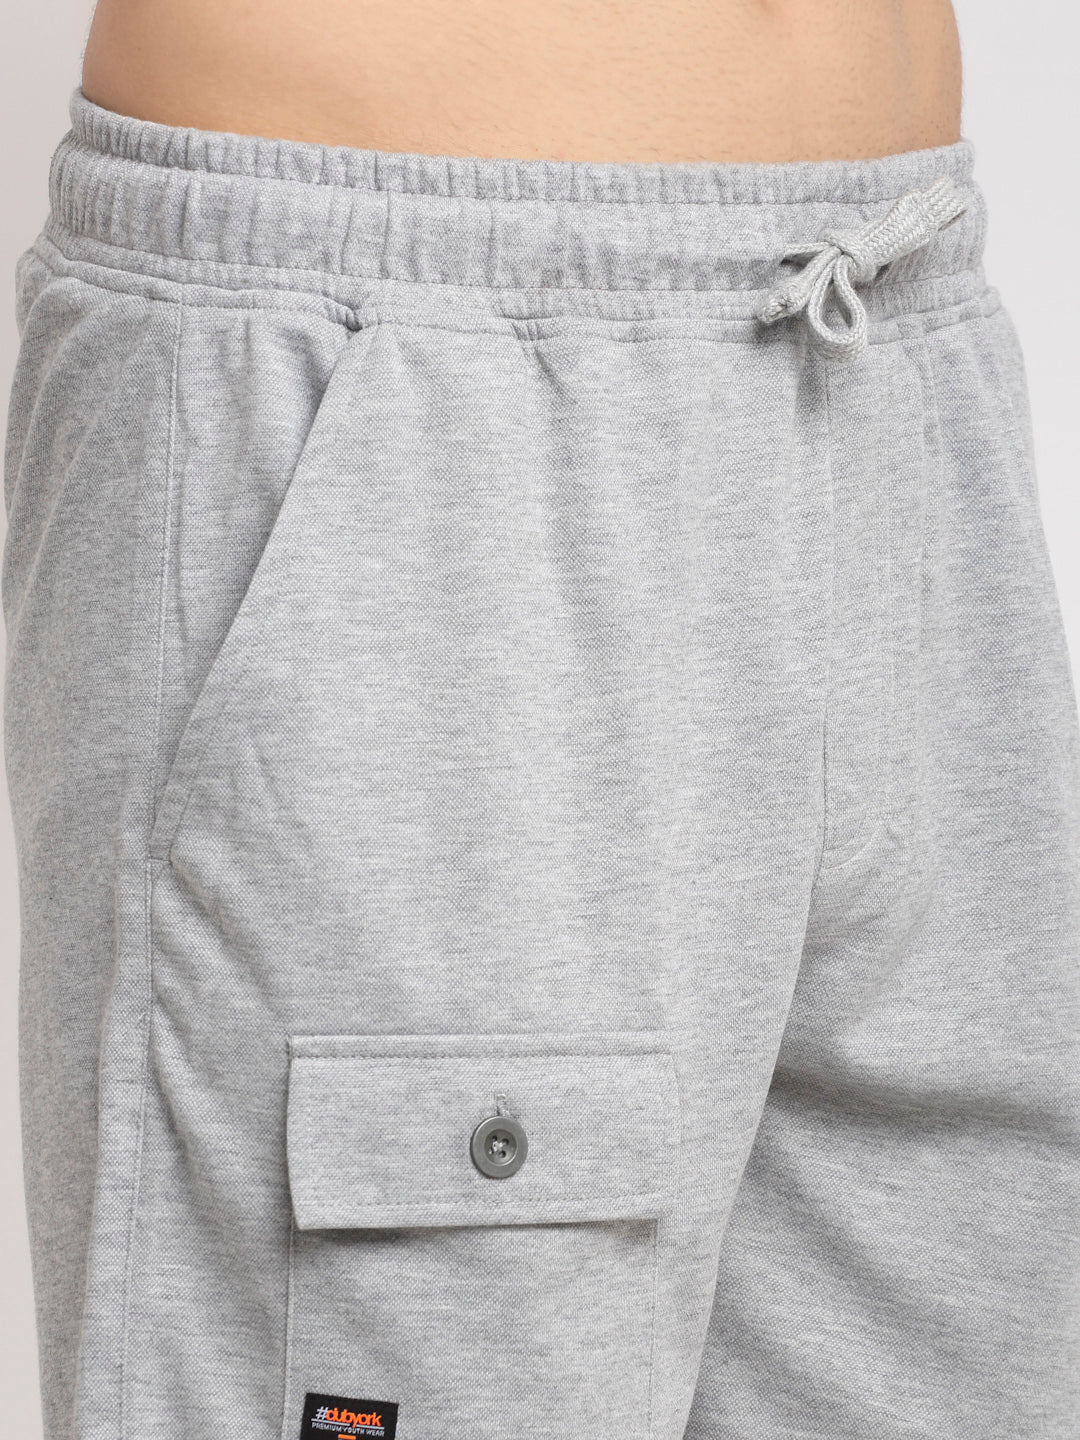 Grey Melange Shorts - clubyork